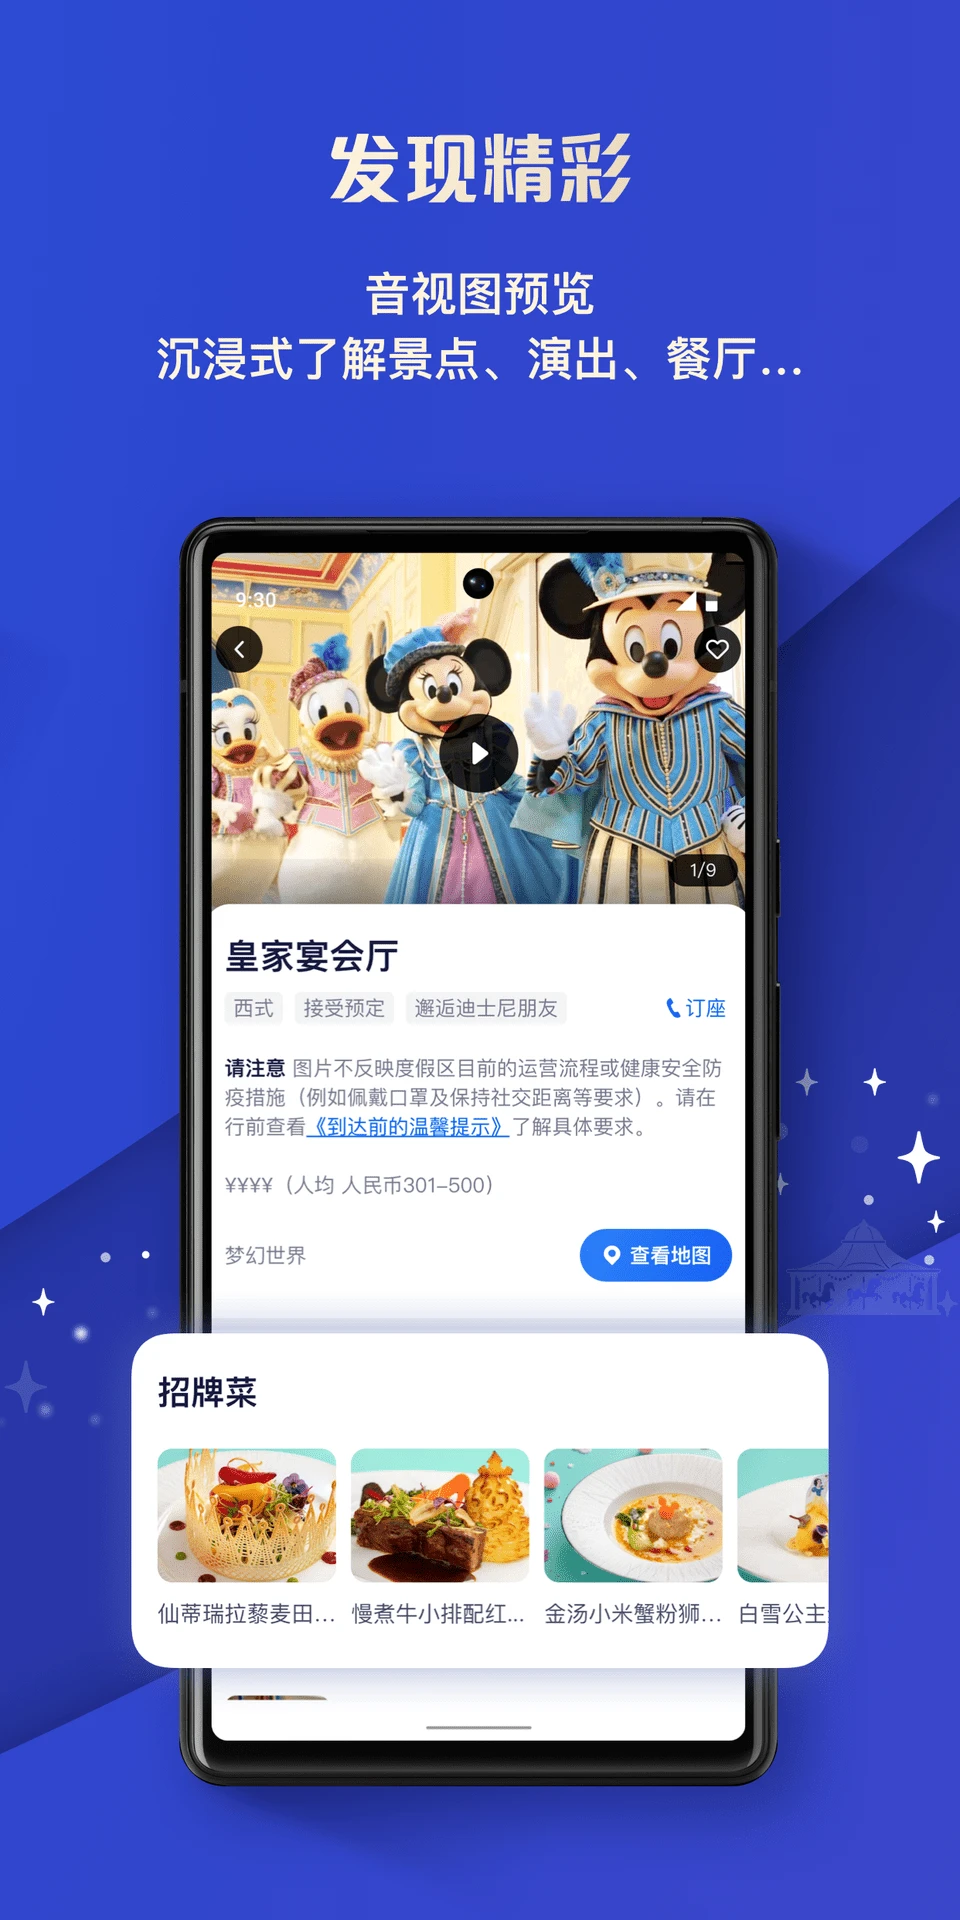 上海迪士尼度假区app界面3